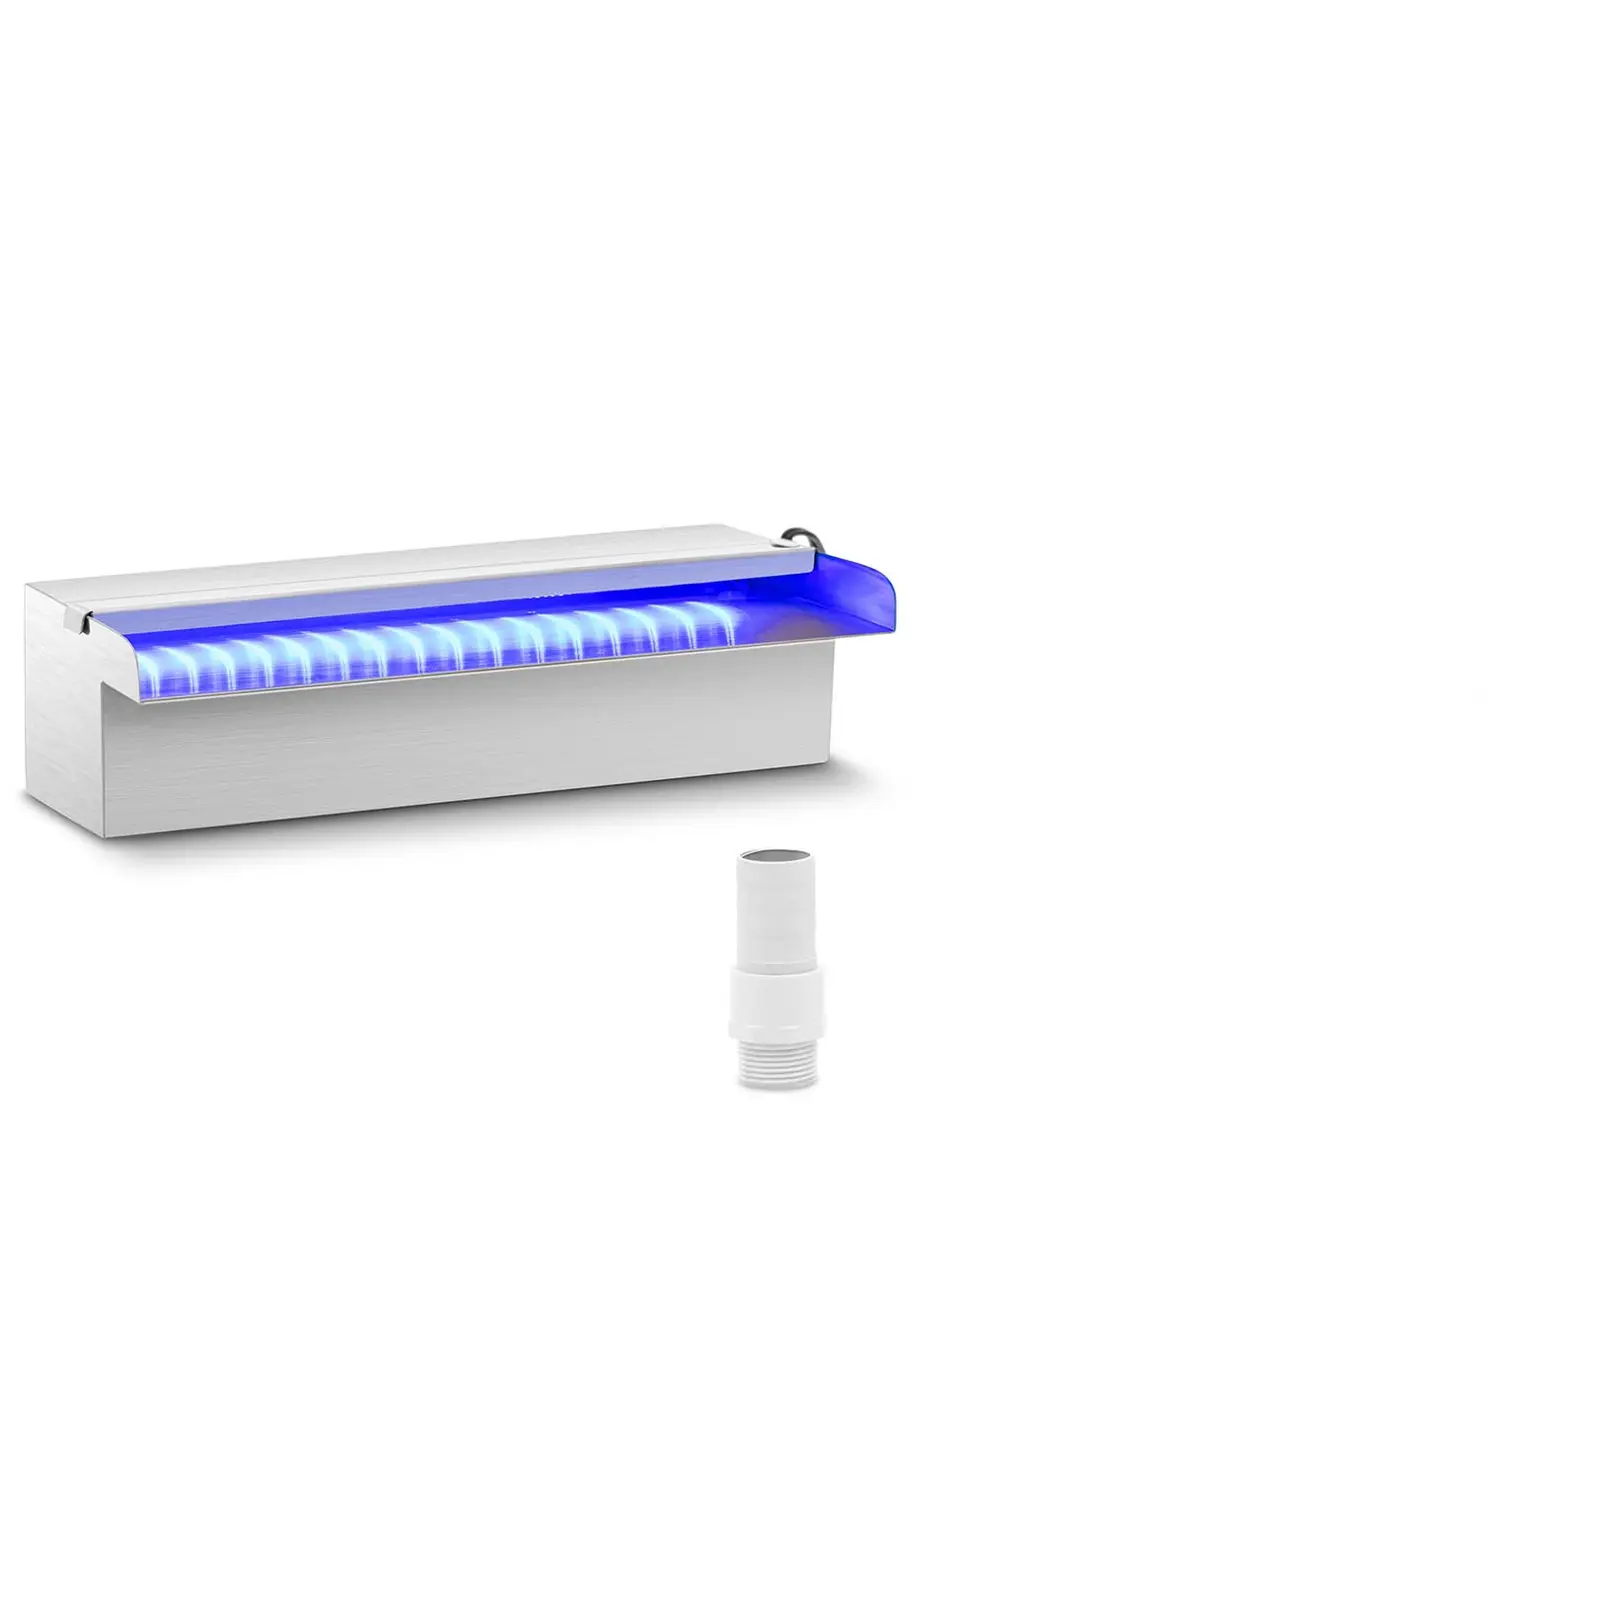 Medence szökőkút - 30 cm - LED világítás - kék/fehér